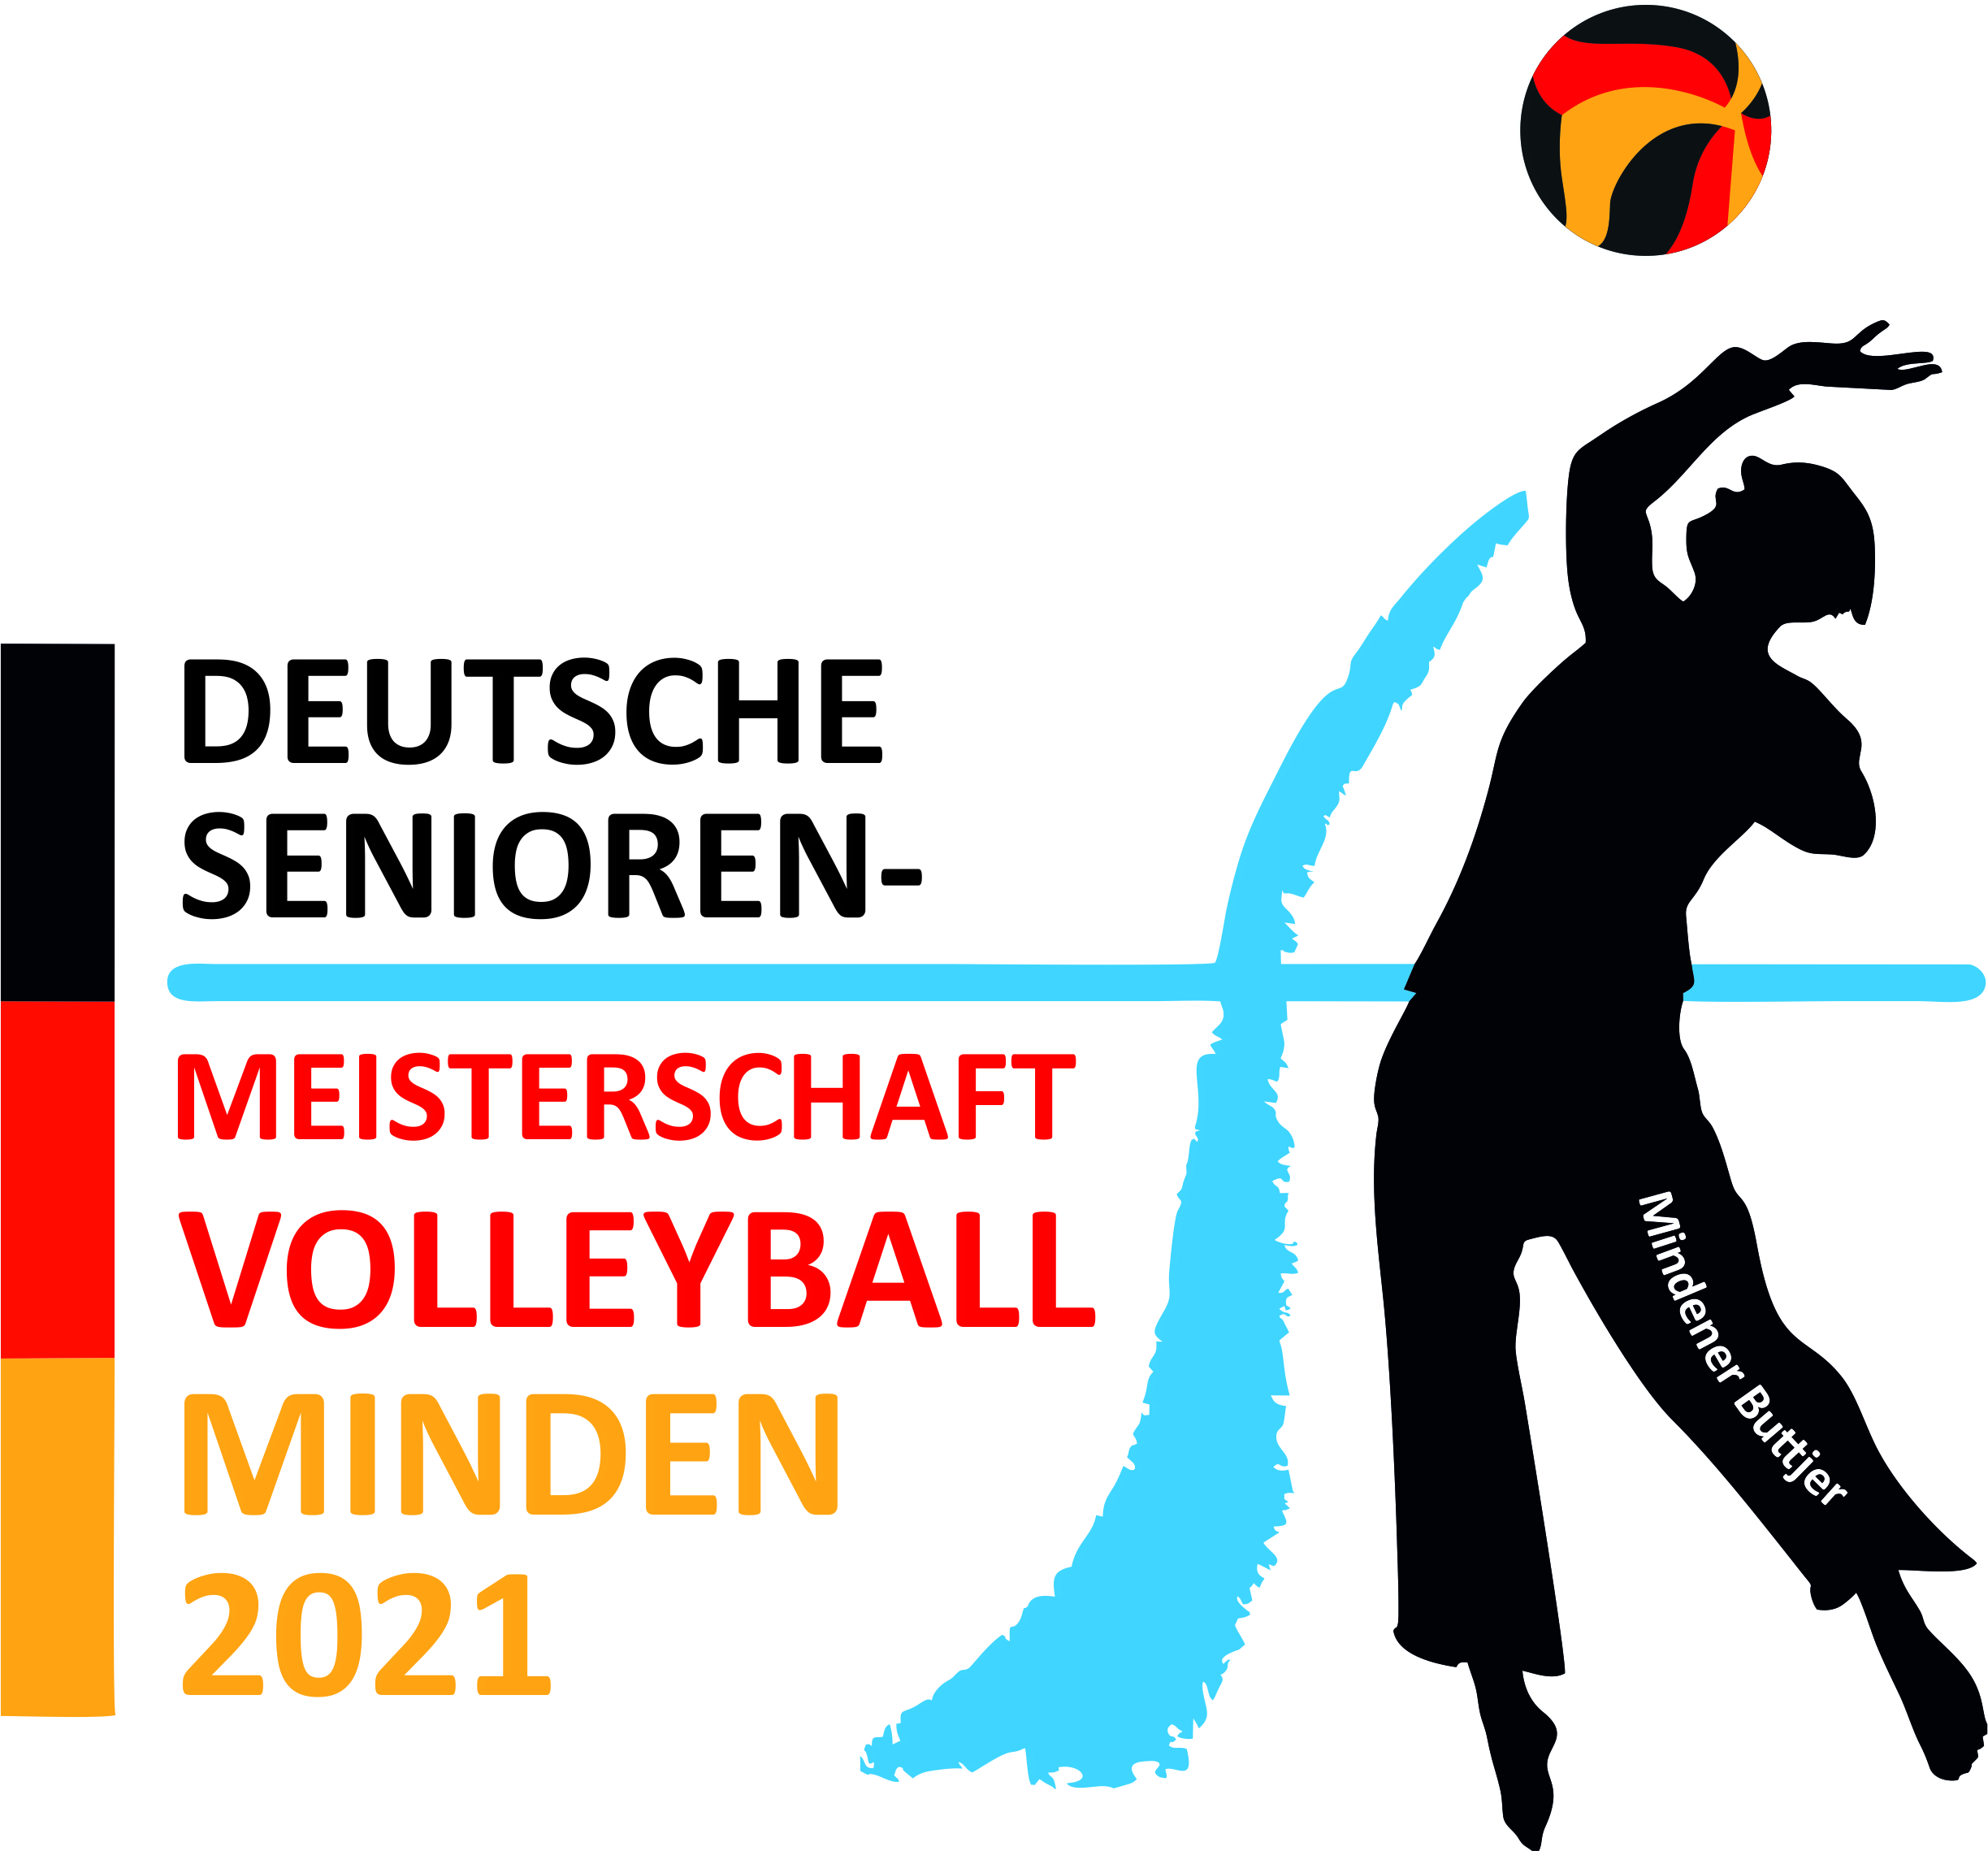 Deutsche Senioren-meisterschaft 2021